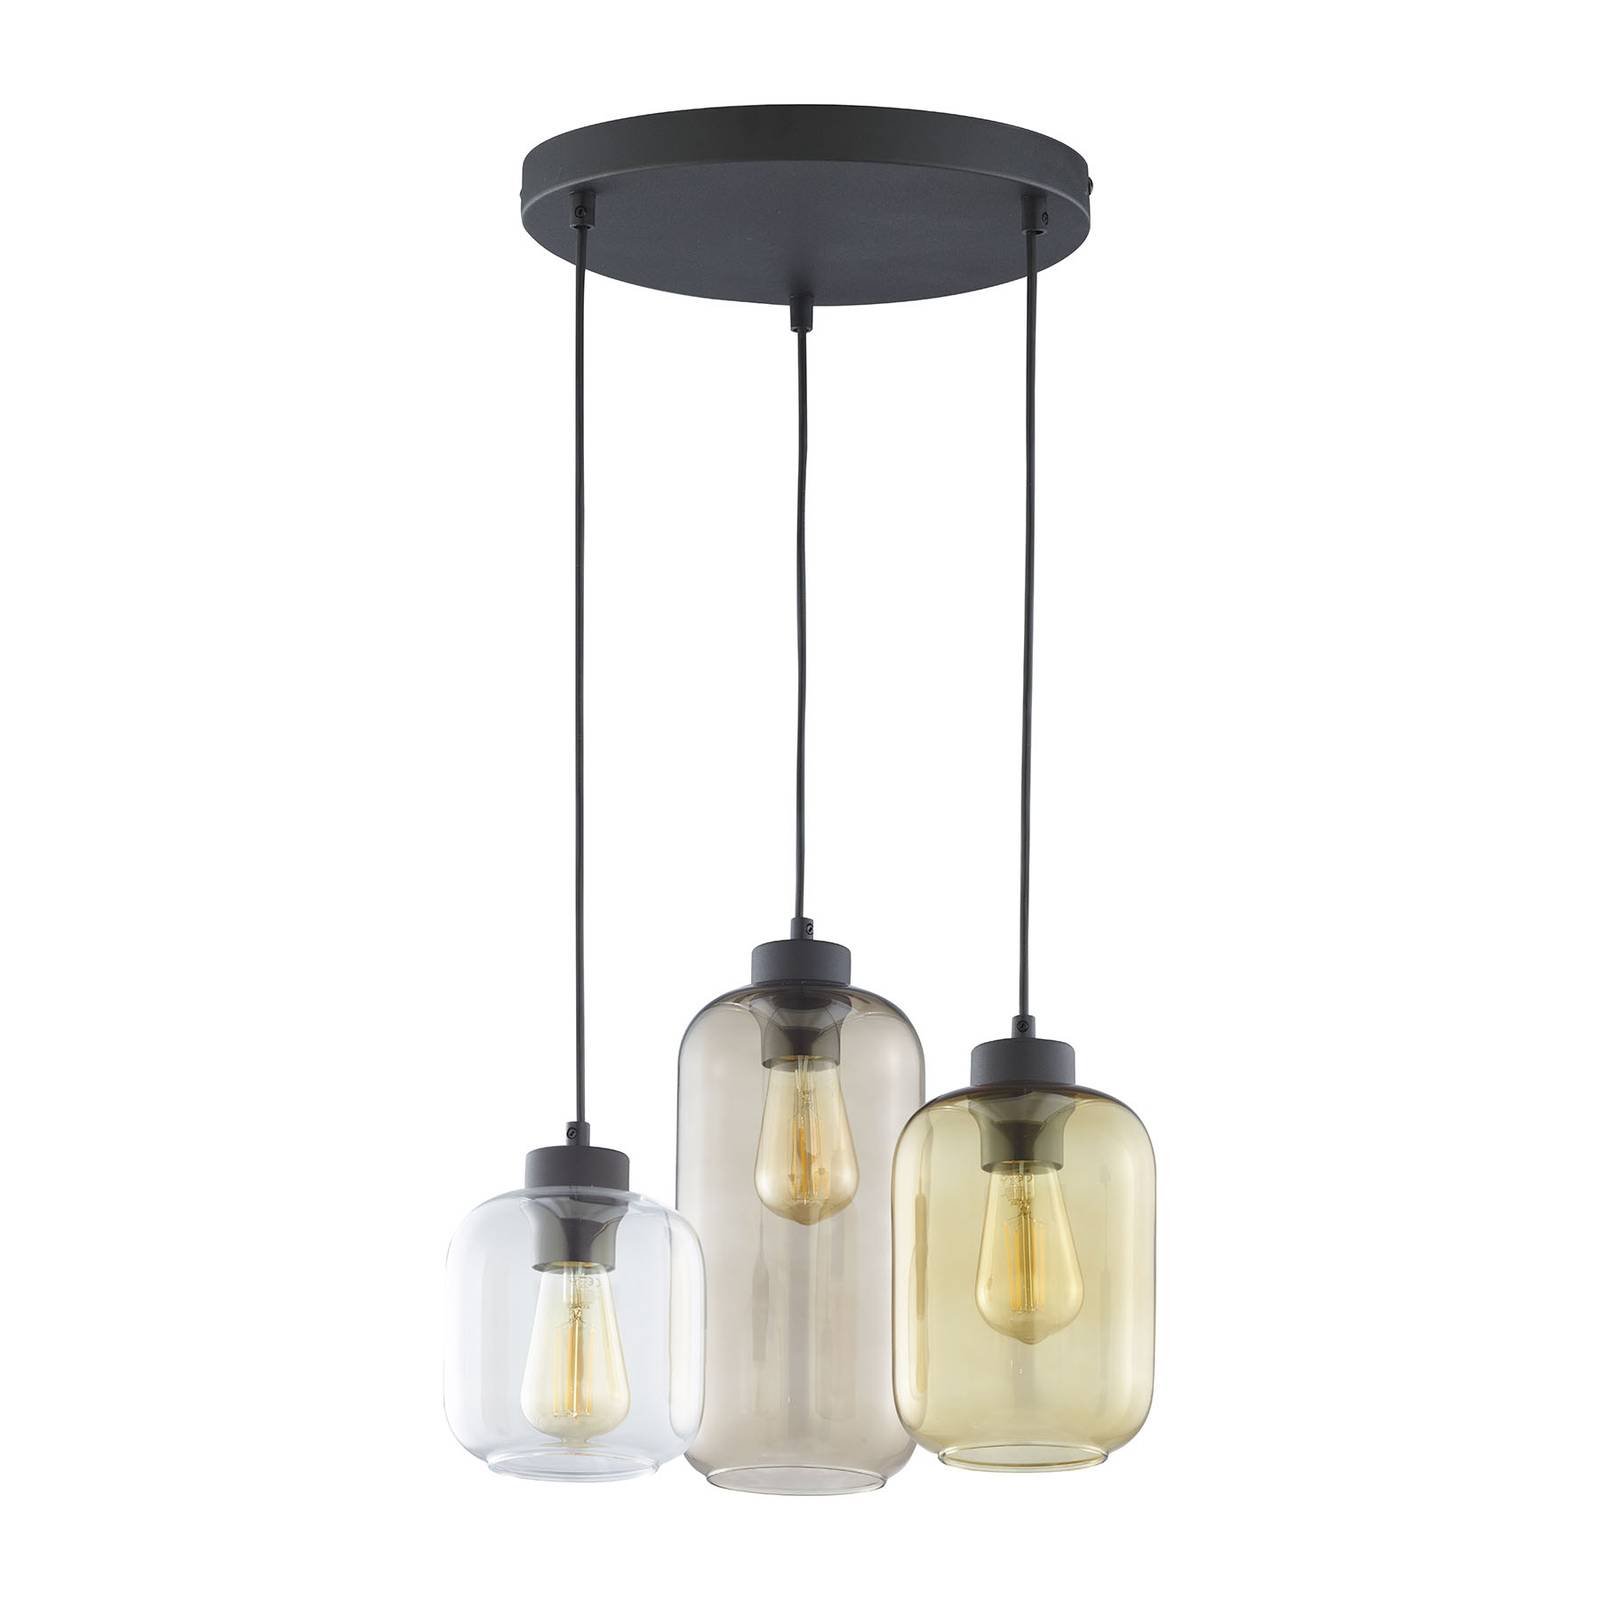 Hanglamp Marco Brown, 3-lamps, helder/bruin